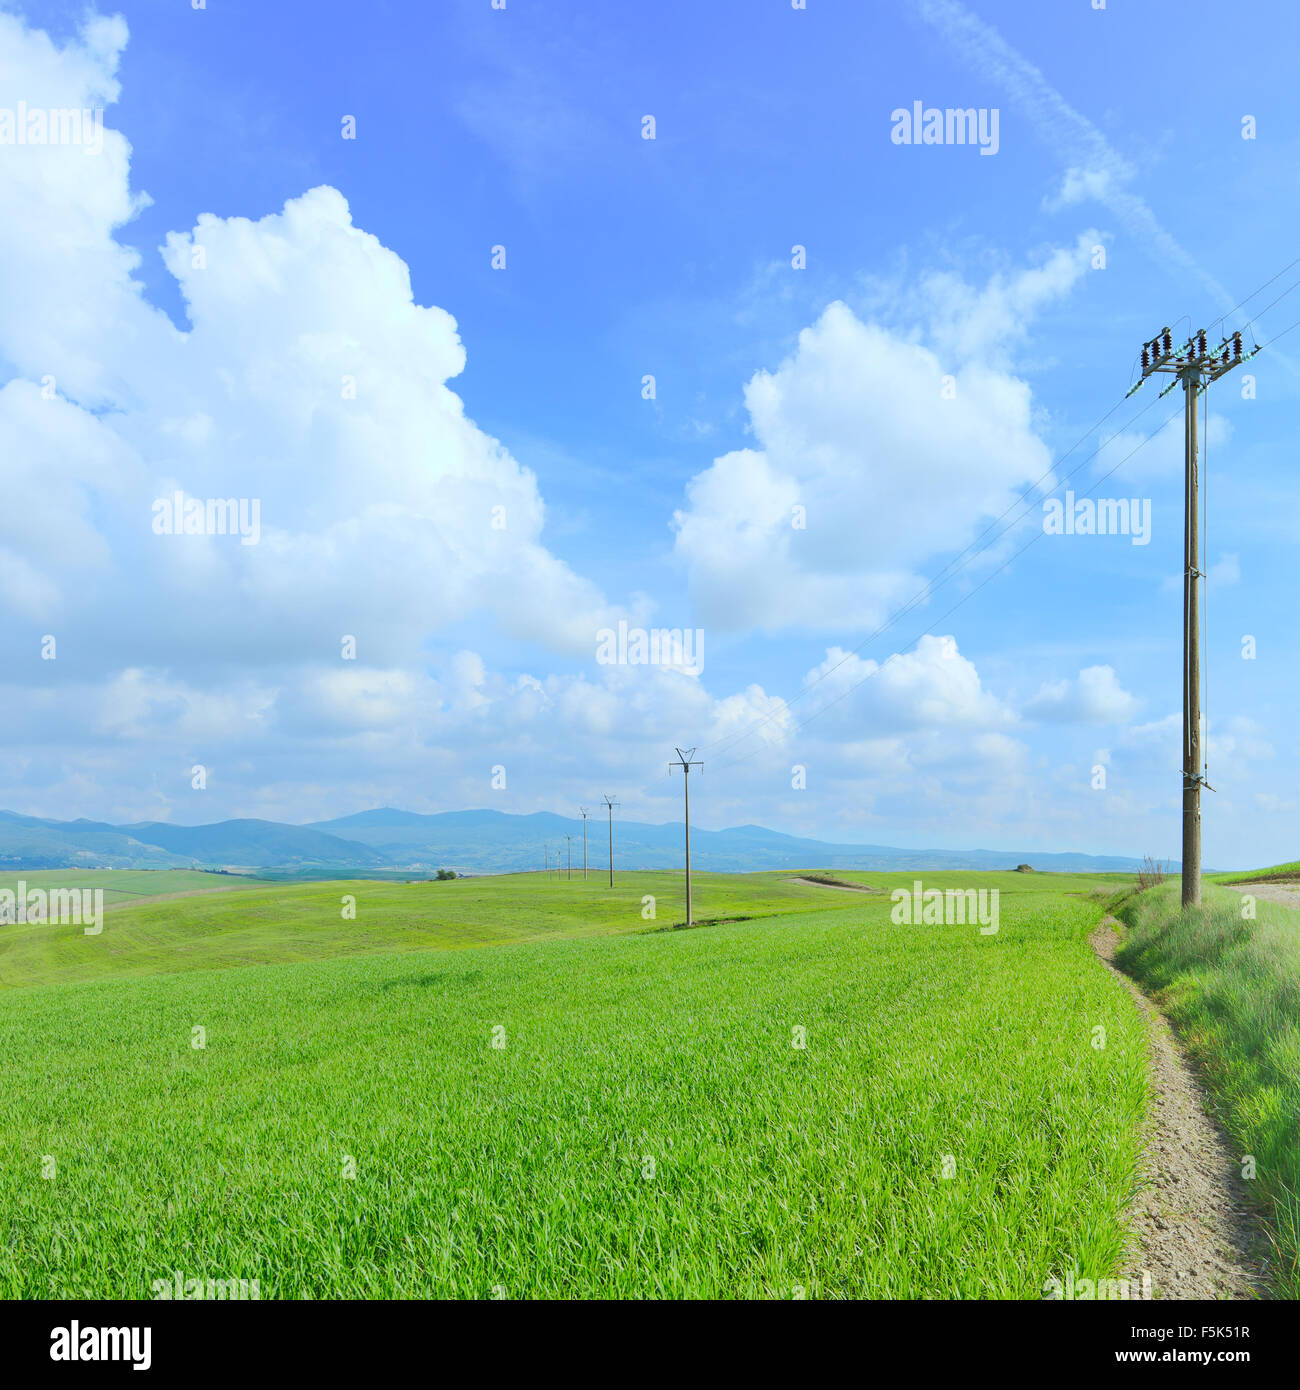 Linea elettrica tralicci in un campo verde e una luce nuvoloso cielo blu nella stagione primaverile.Toscana, Italia. Foto Stock